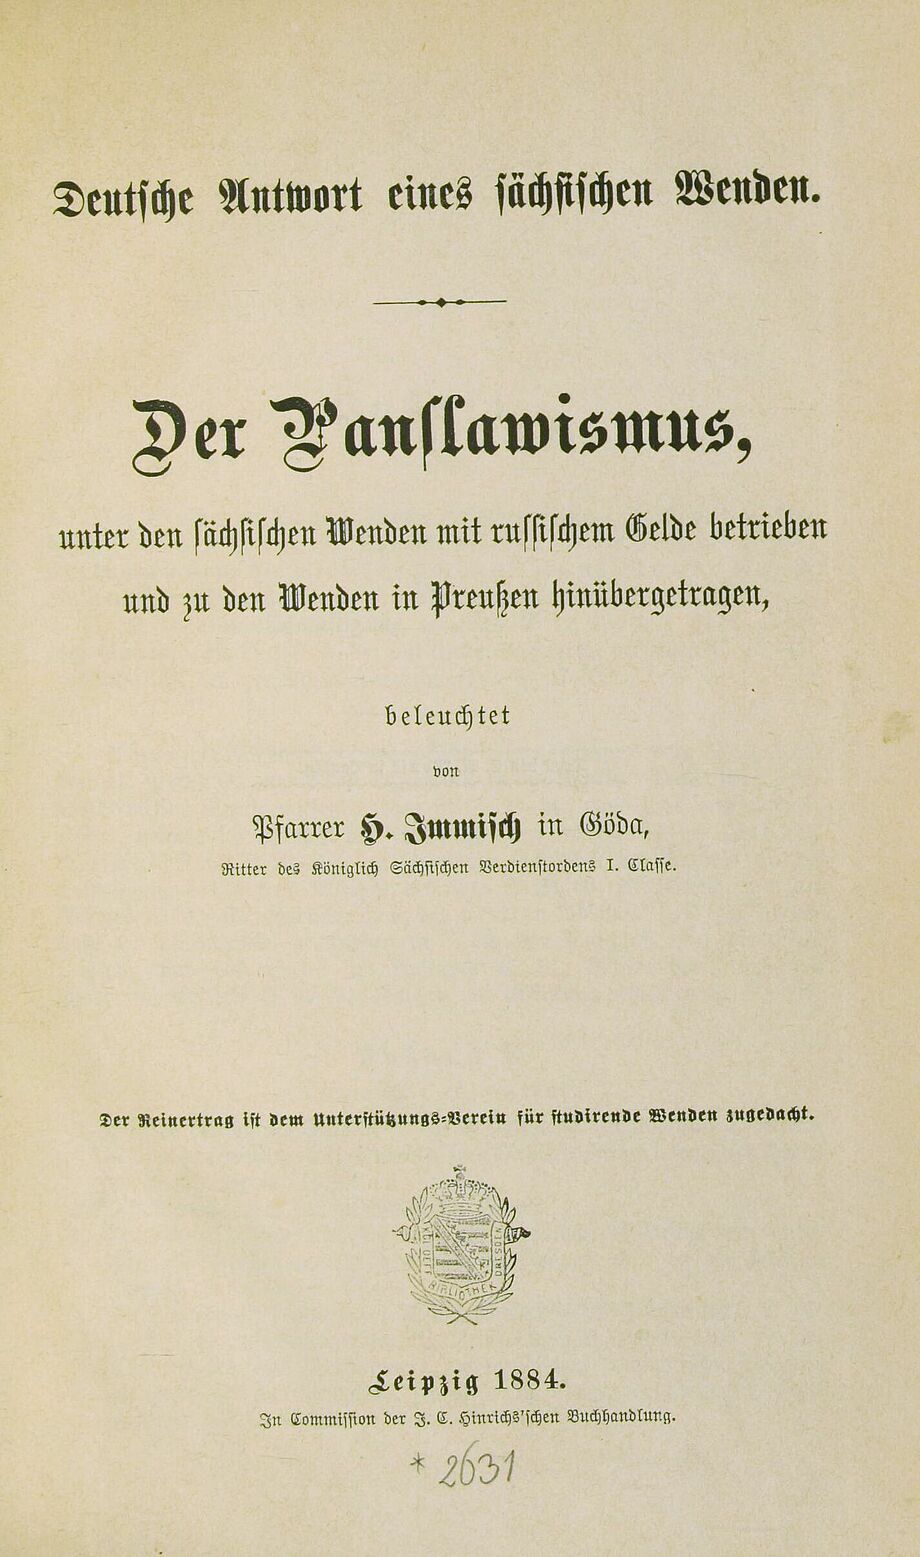 "Der Panslawismus. Deutsche Antwort eines sächsischen Wenden" von Friedrich Heinrich Immisch